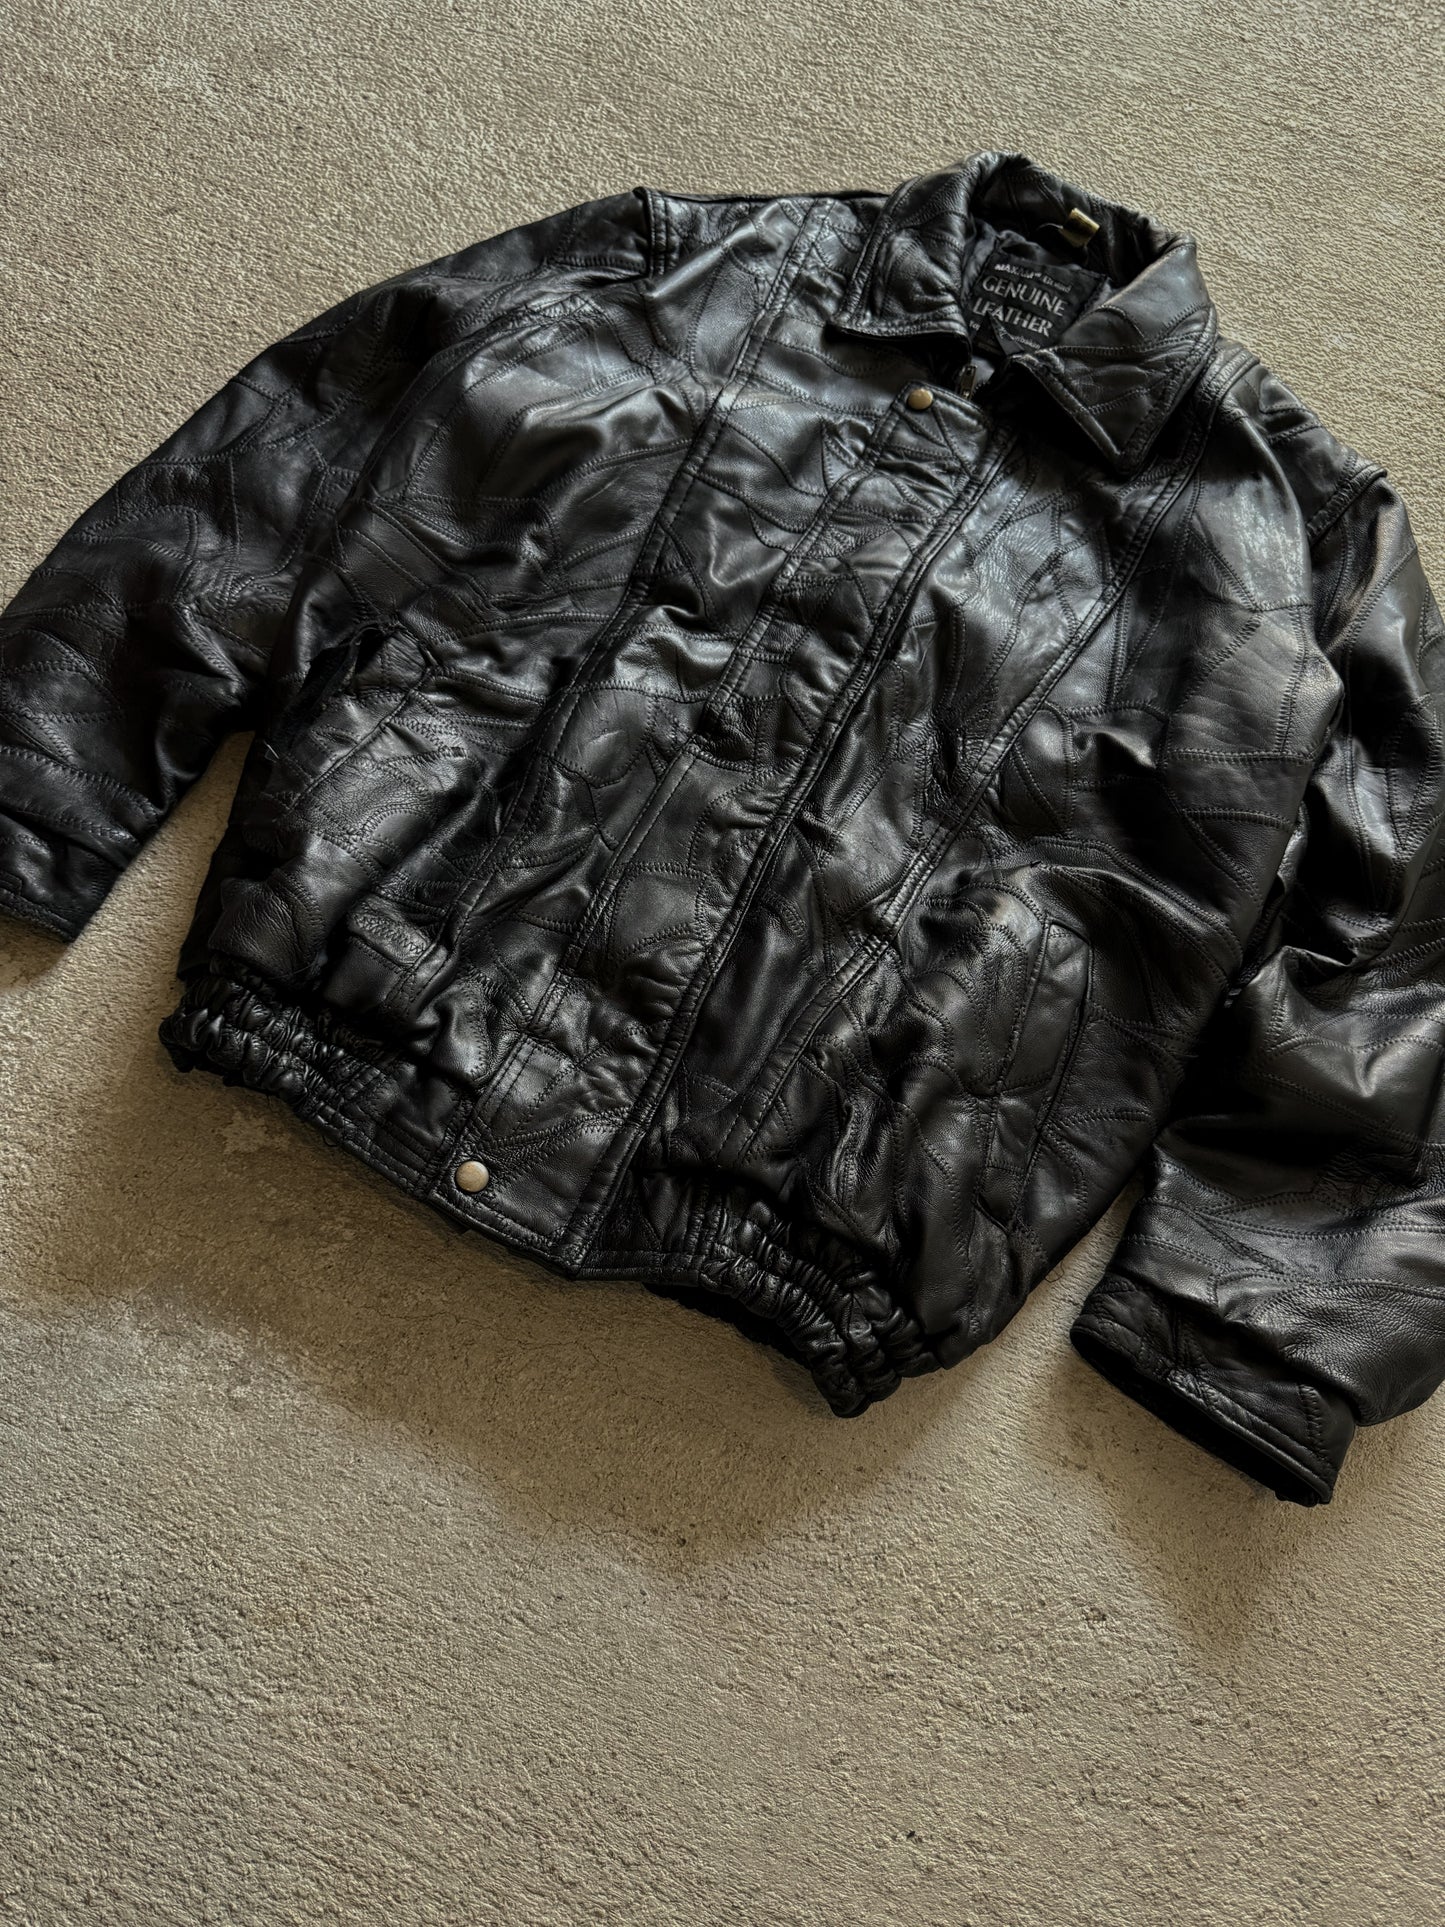 (XL) Vintage Maxam Genuine Leather Jacket